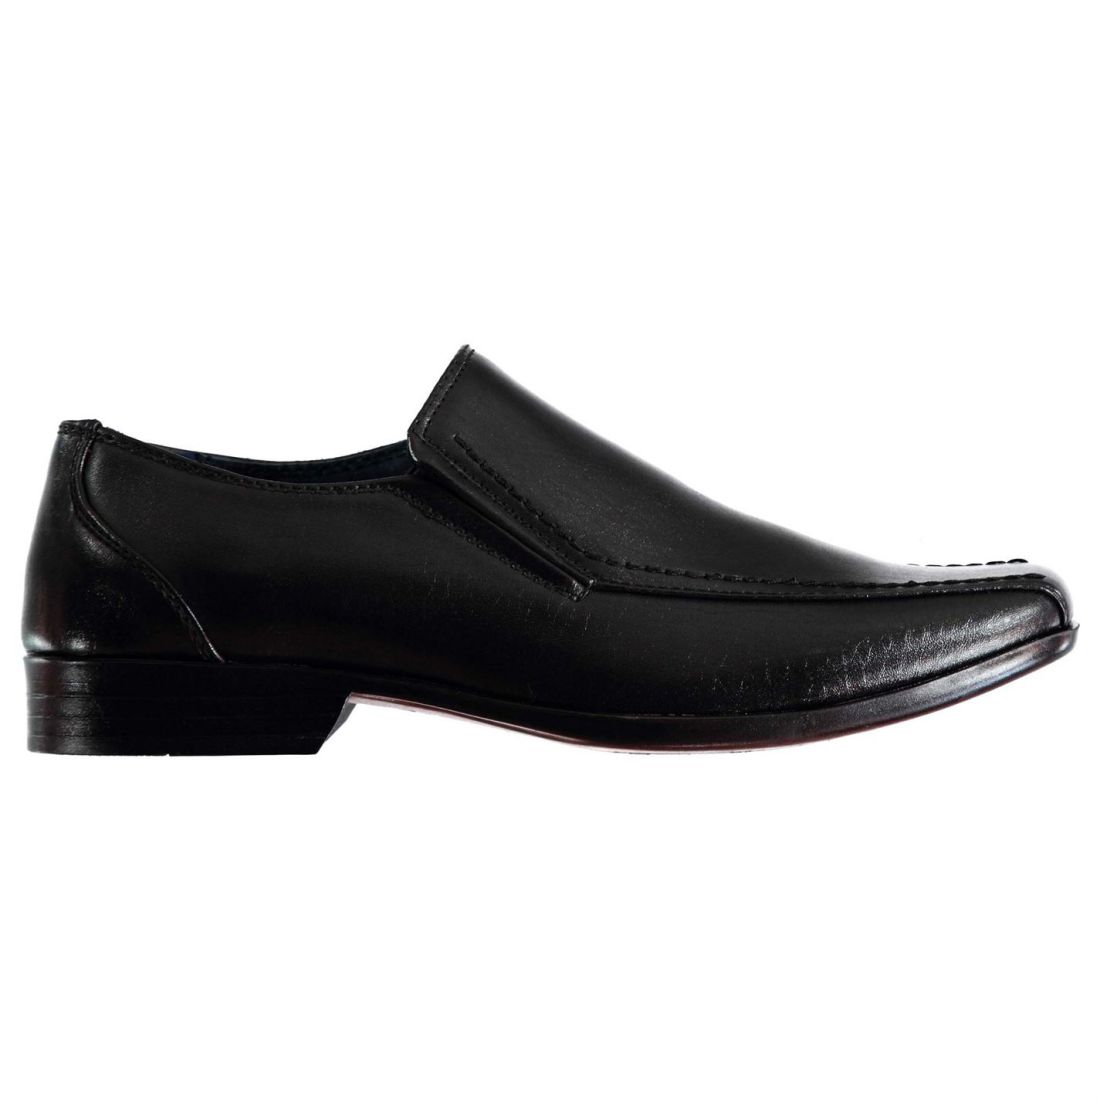 Giorgio Kids Bourne Slip On Junior Boys Shoes Formal Classic Design ...